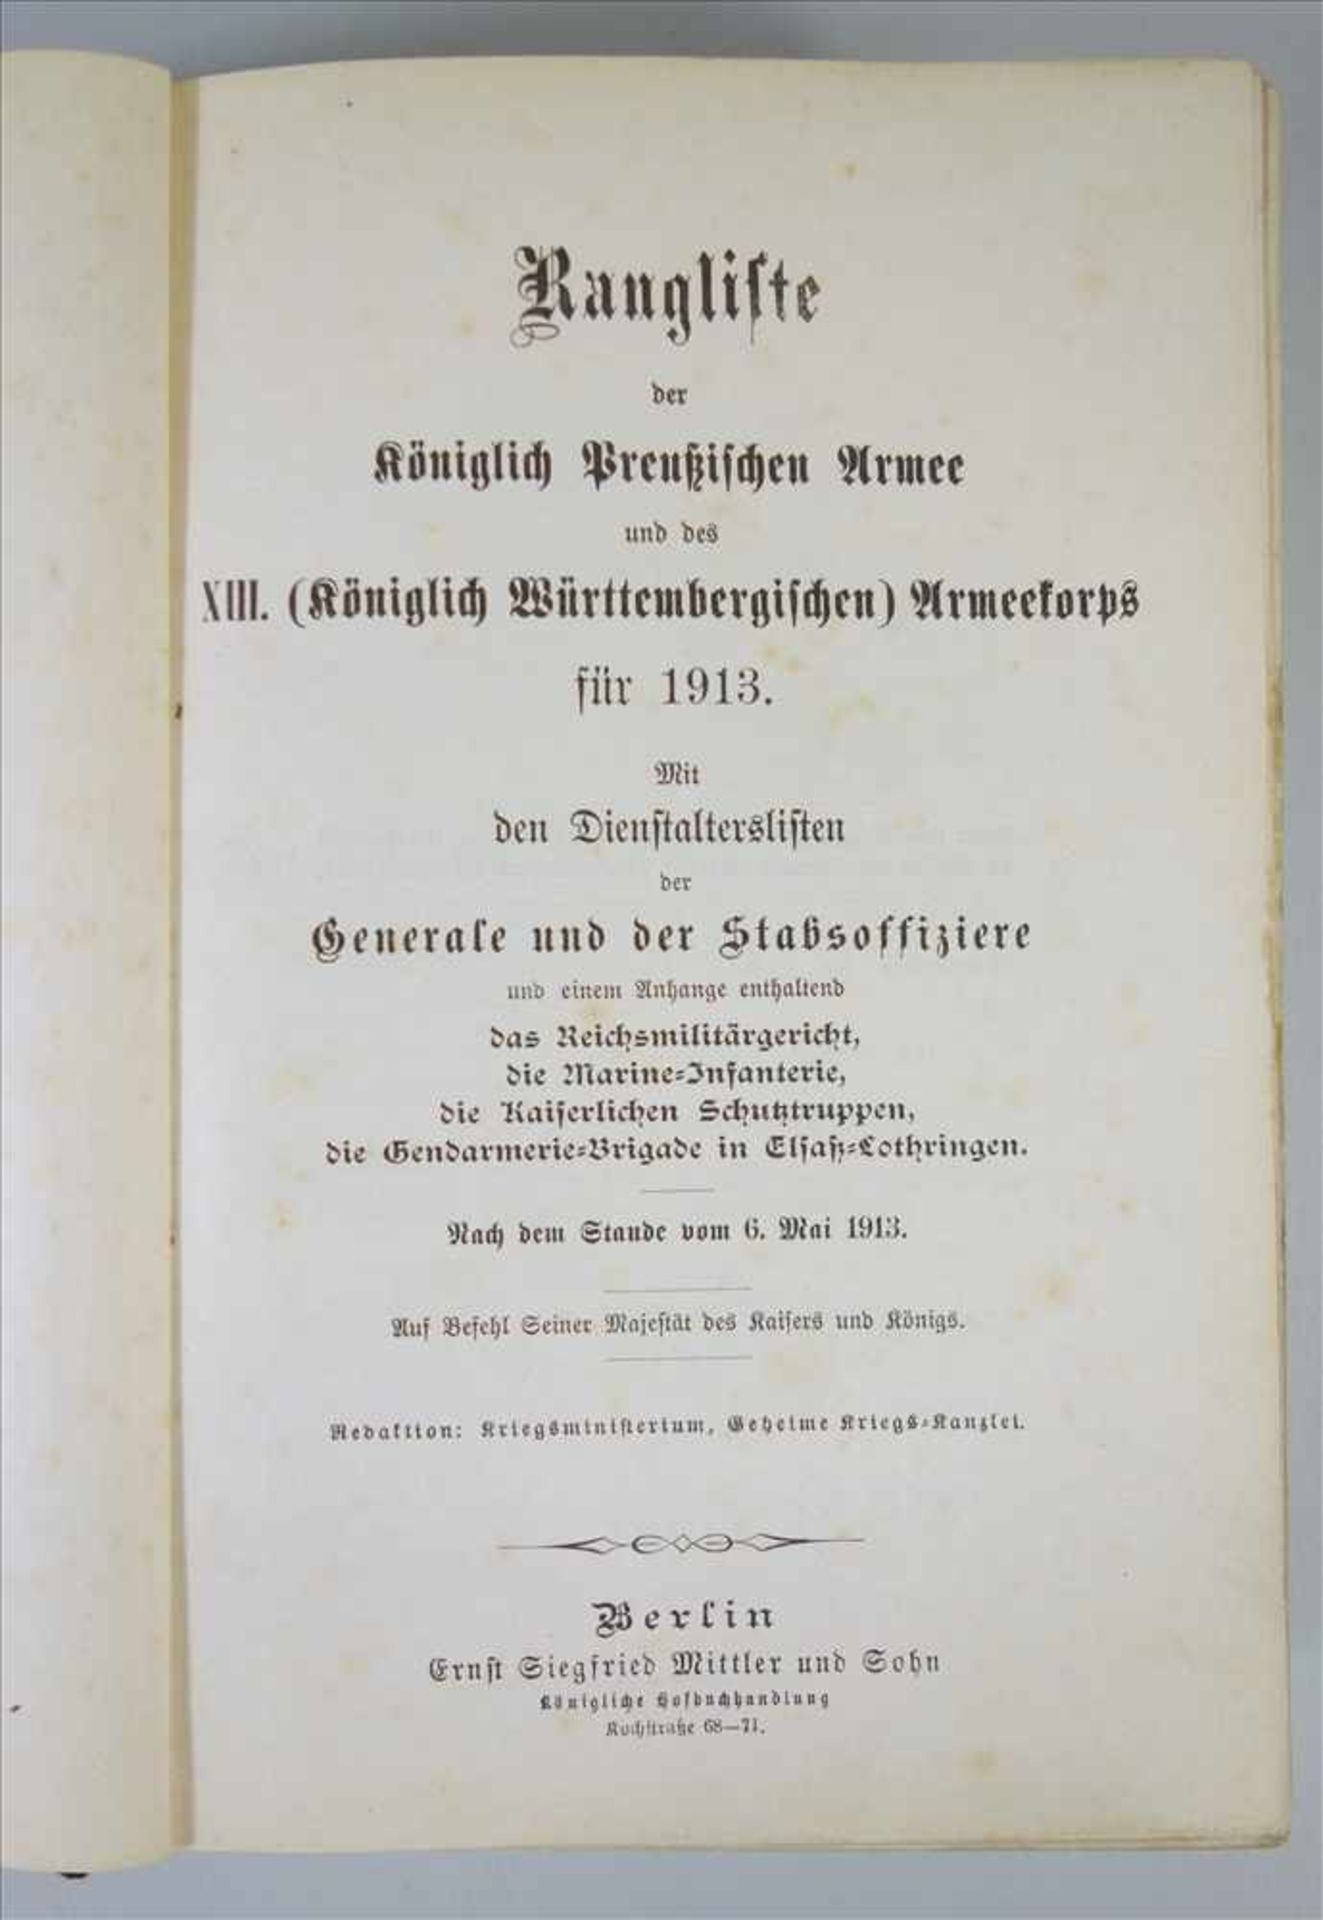 Rangliste der Königlich Preußischen Armee und des XIII. (Königlich Württembergischen) Armeekorps für